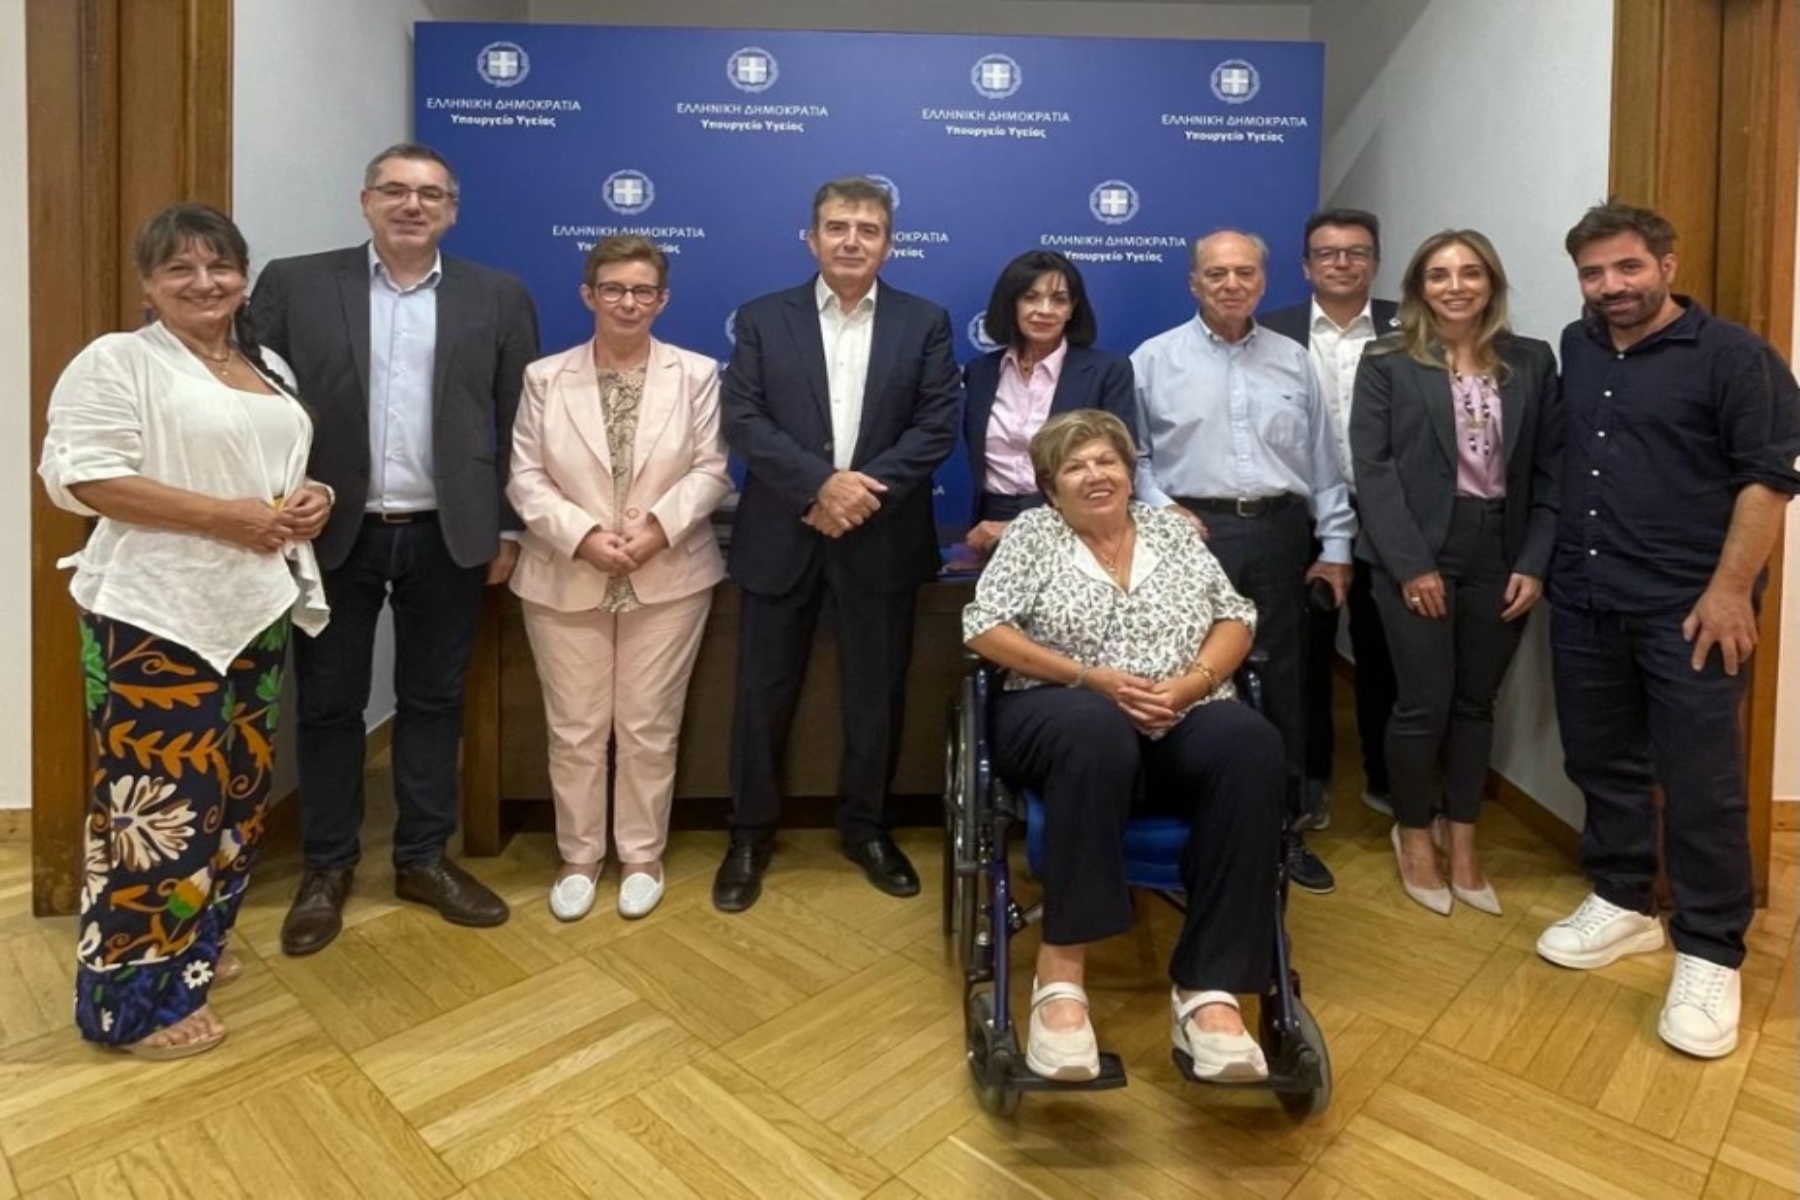 Υπουργείο Υγείας: Συνάντηση Μιχάλη Χρυσοχοΐδη με την Ένωση Ασθενών Ελλάδος